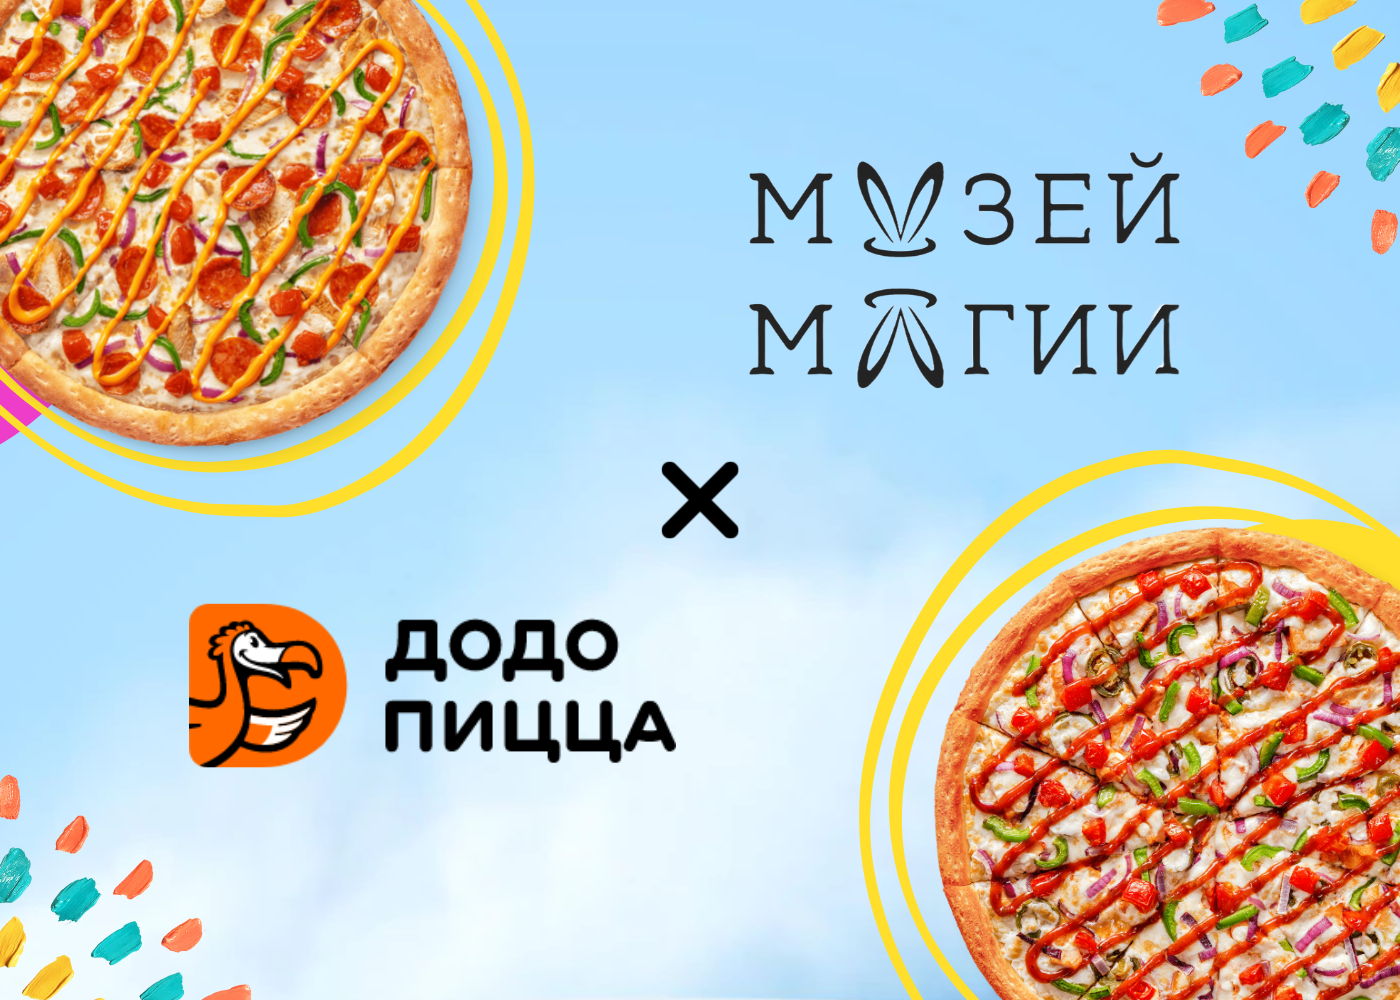 Акции на пиццу в спб с доставкой. 5 Пицц. Пиццерии в Санкт-Петербурге с доставкой. Ребус Додо пицца. Акция при покупке пяти пицц шестая в подарок.